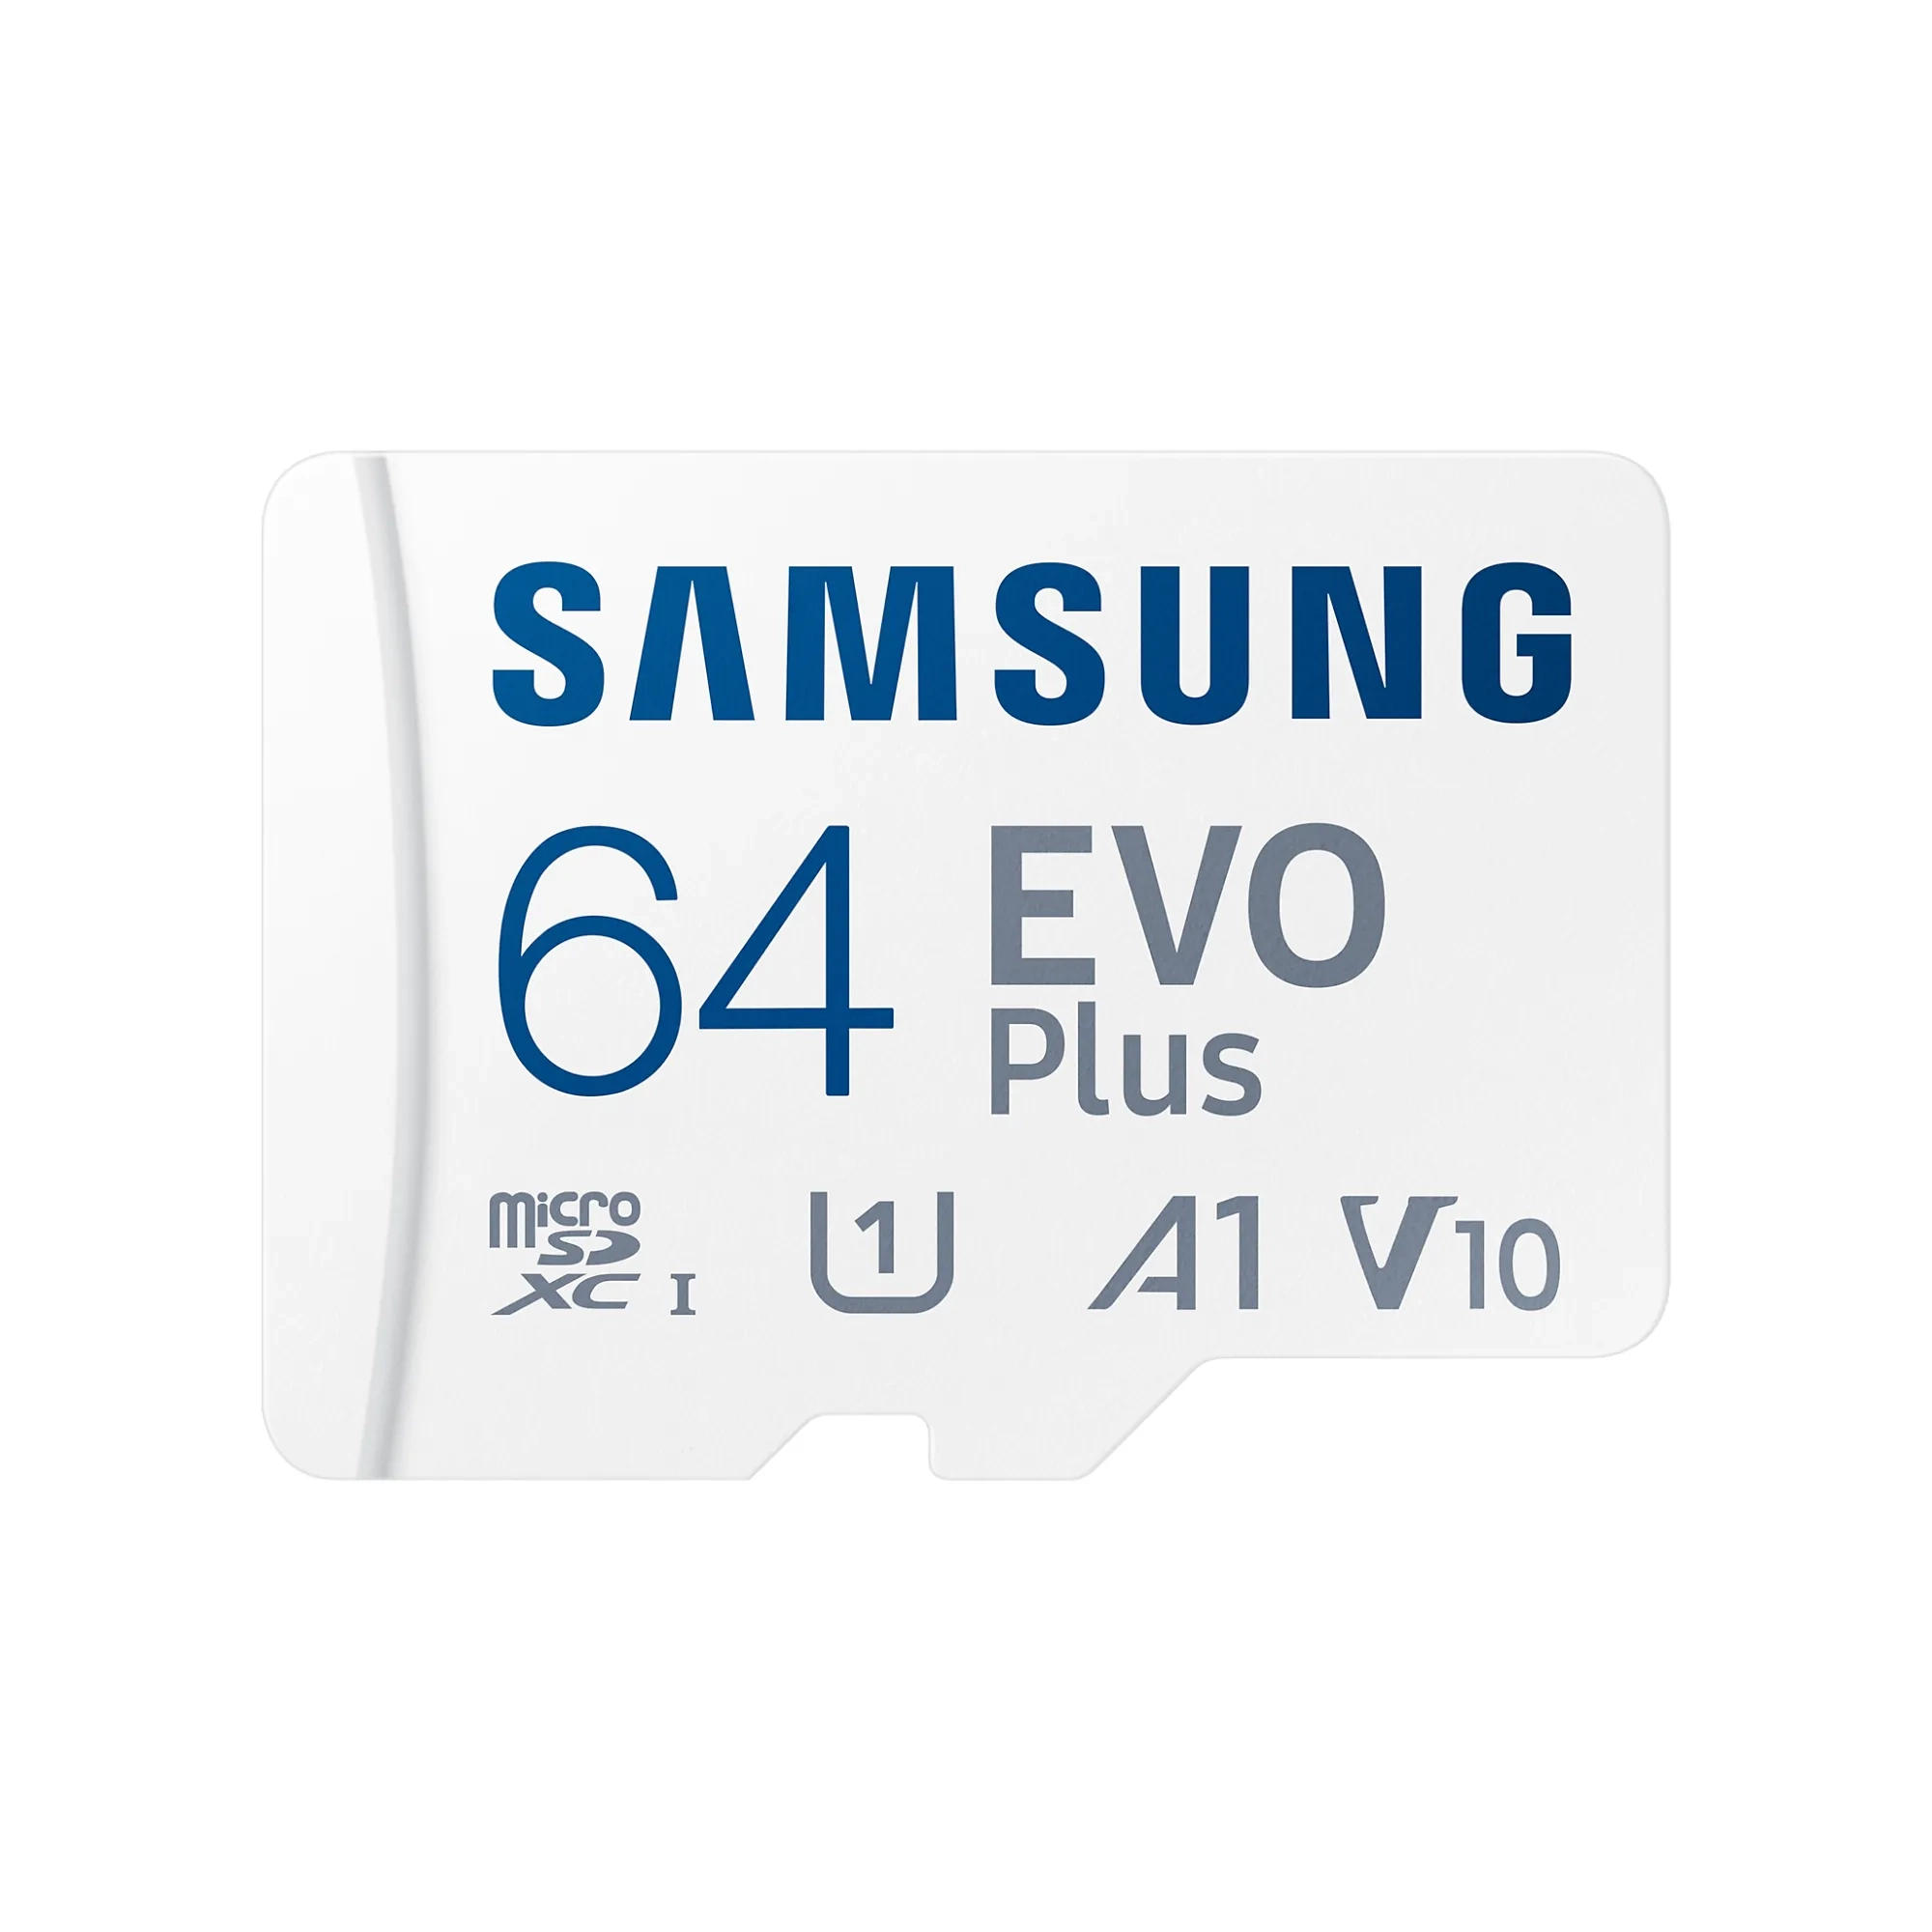 Samsung EVO Plus microSD Hafıza Kartı 64 GB (1)